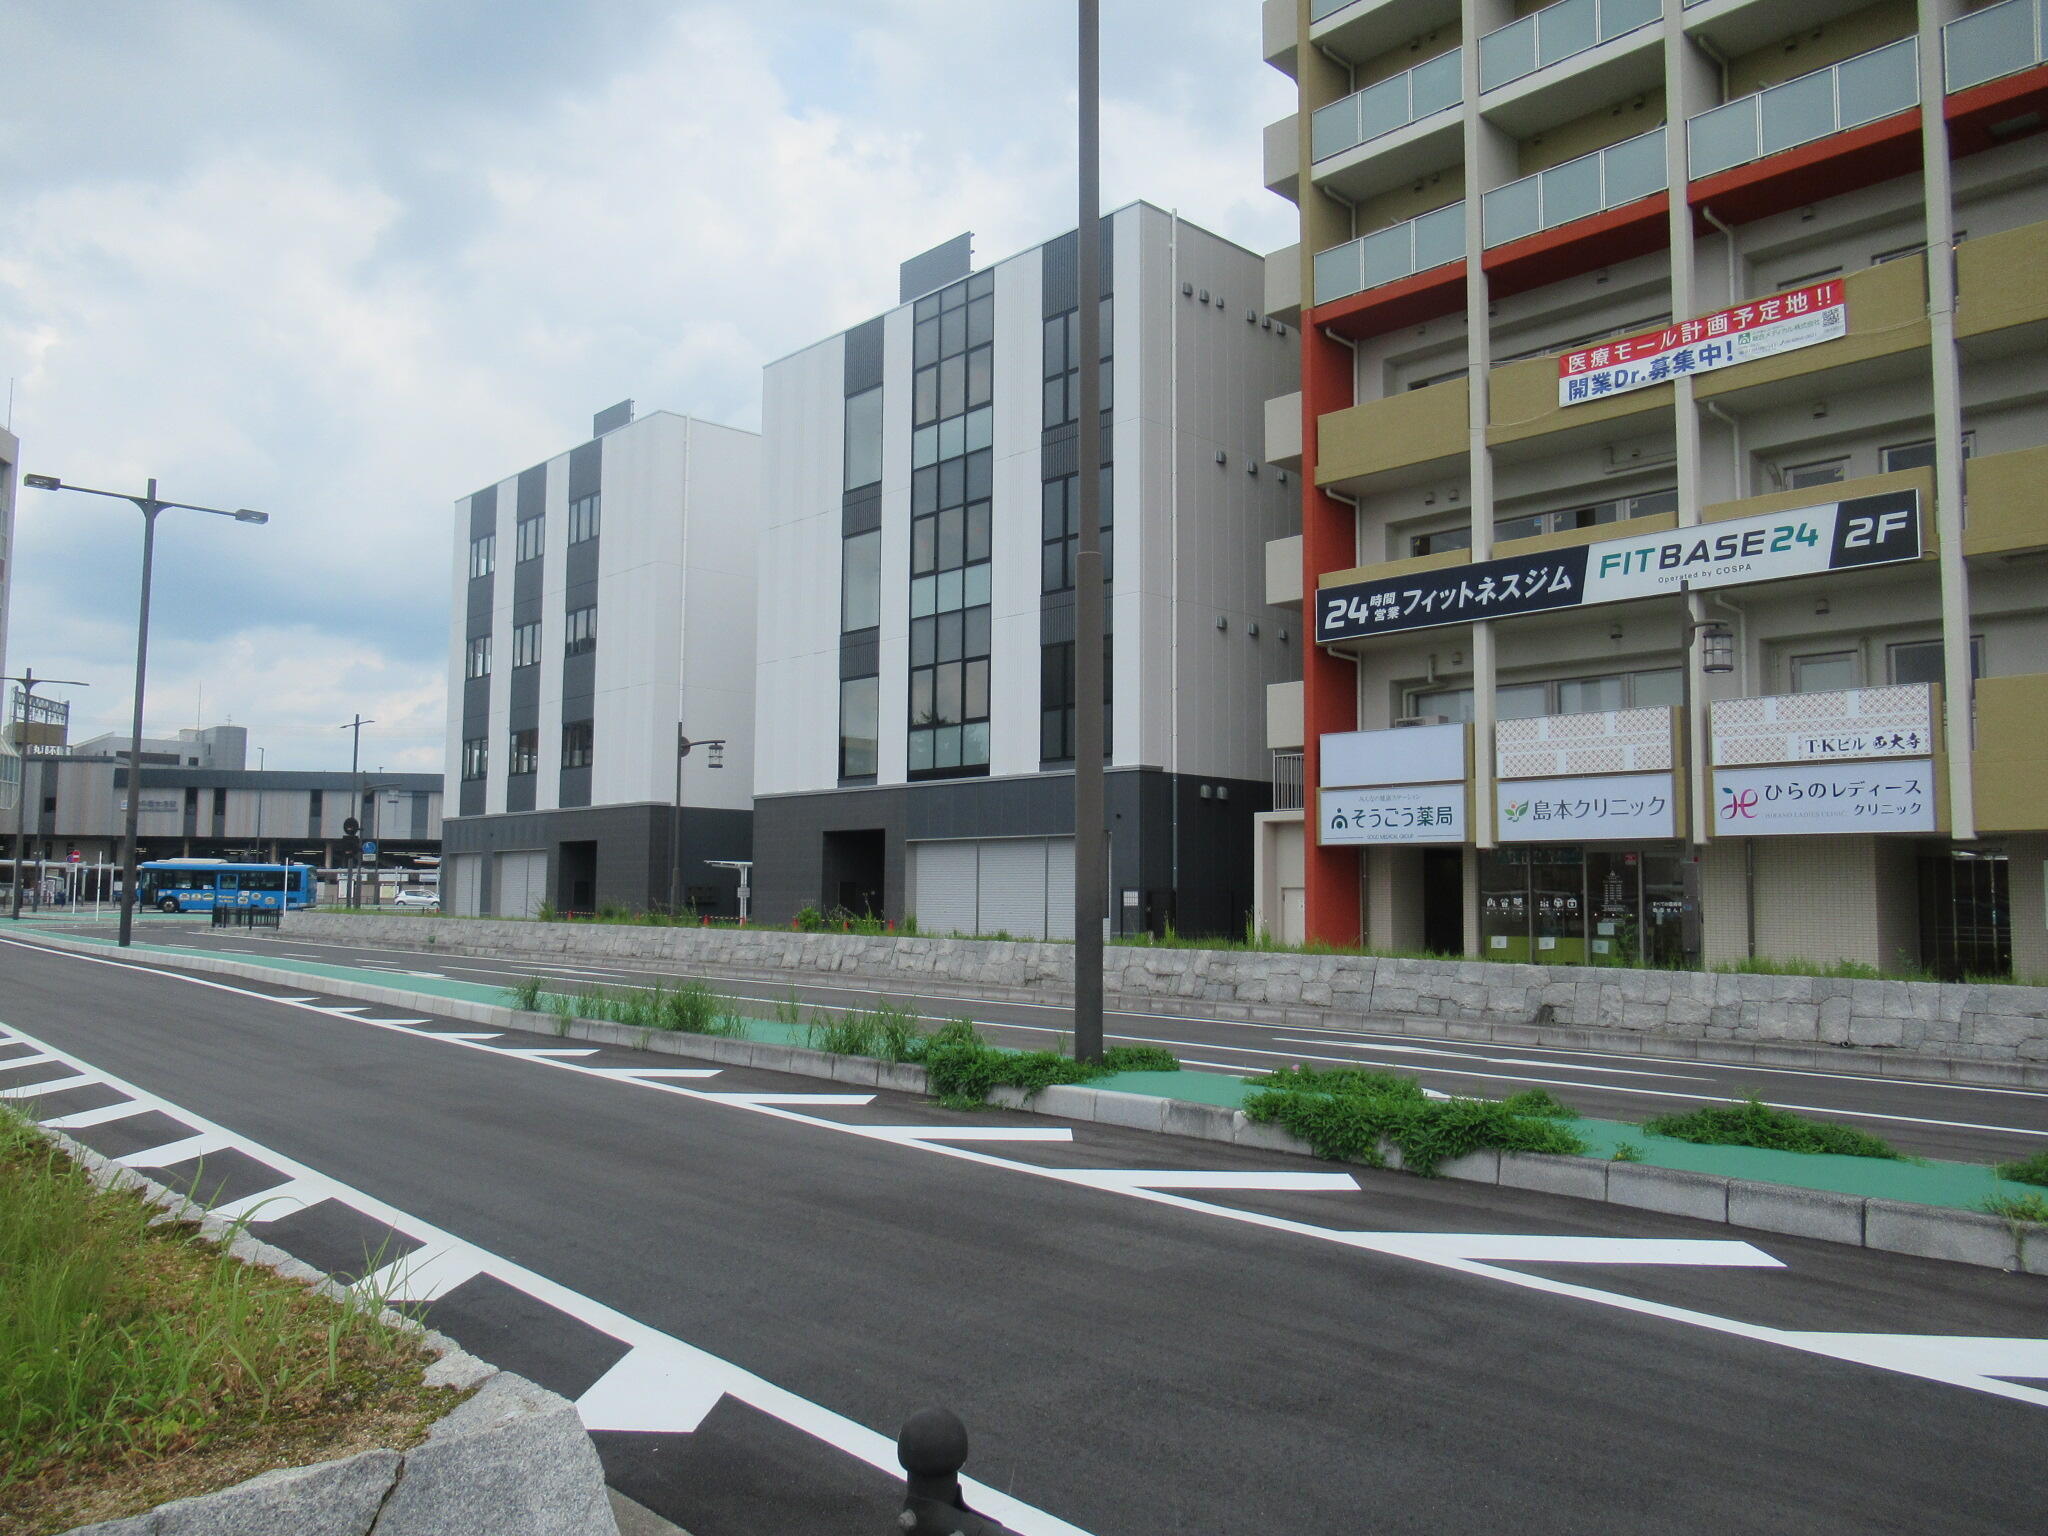 左手奥に大和西大寺の駅が見えていて、とても駅に近いよ。